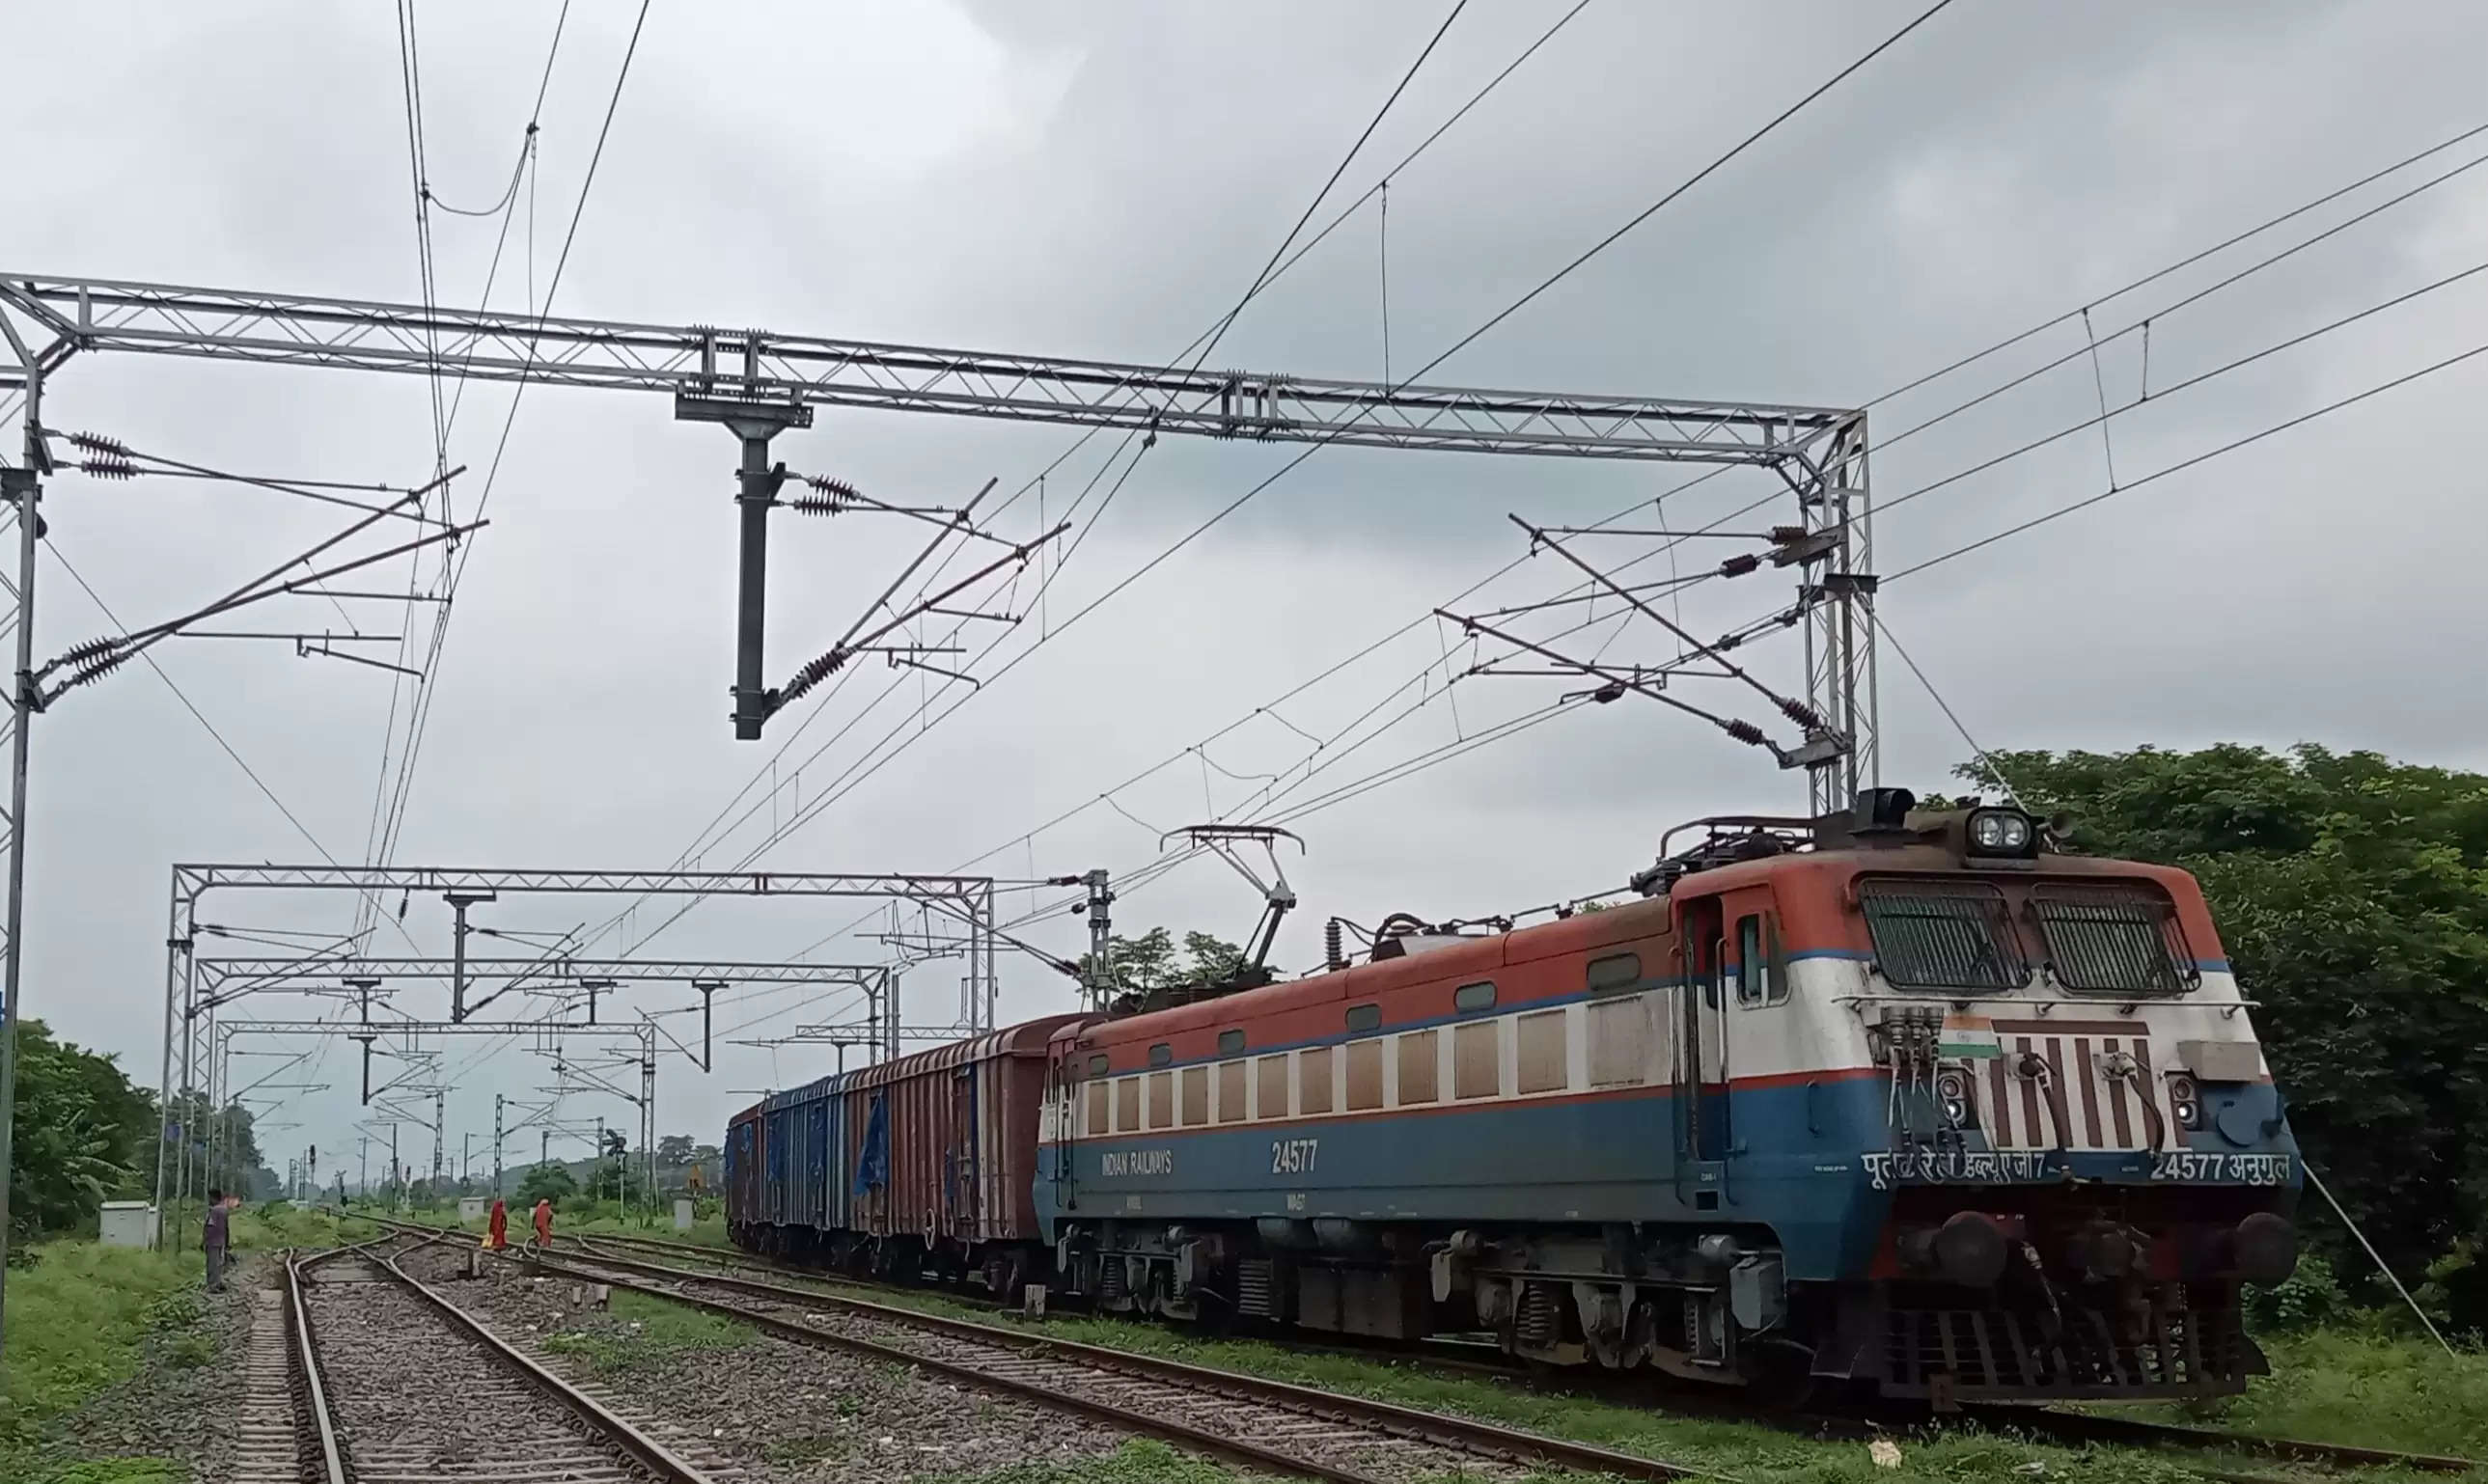 बछवाड़ा-हाजीपुर रेलखंड पर विभिन्न ट्रेनों के परिचालन में बदलाव